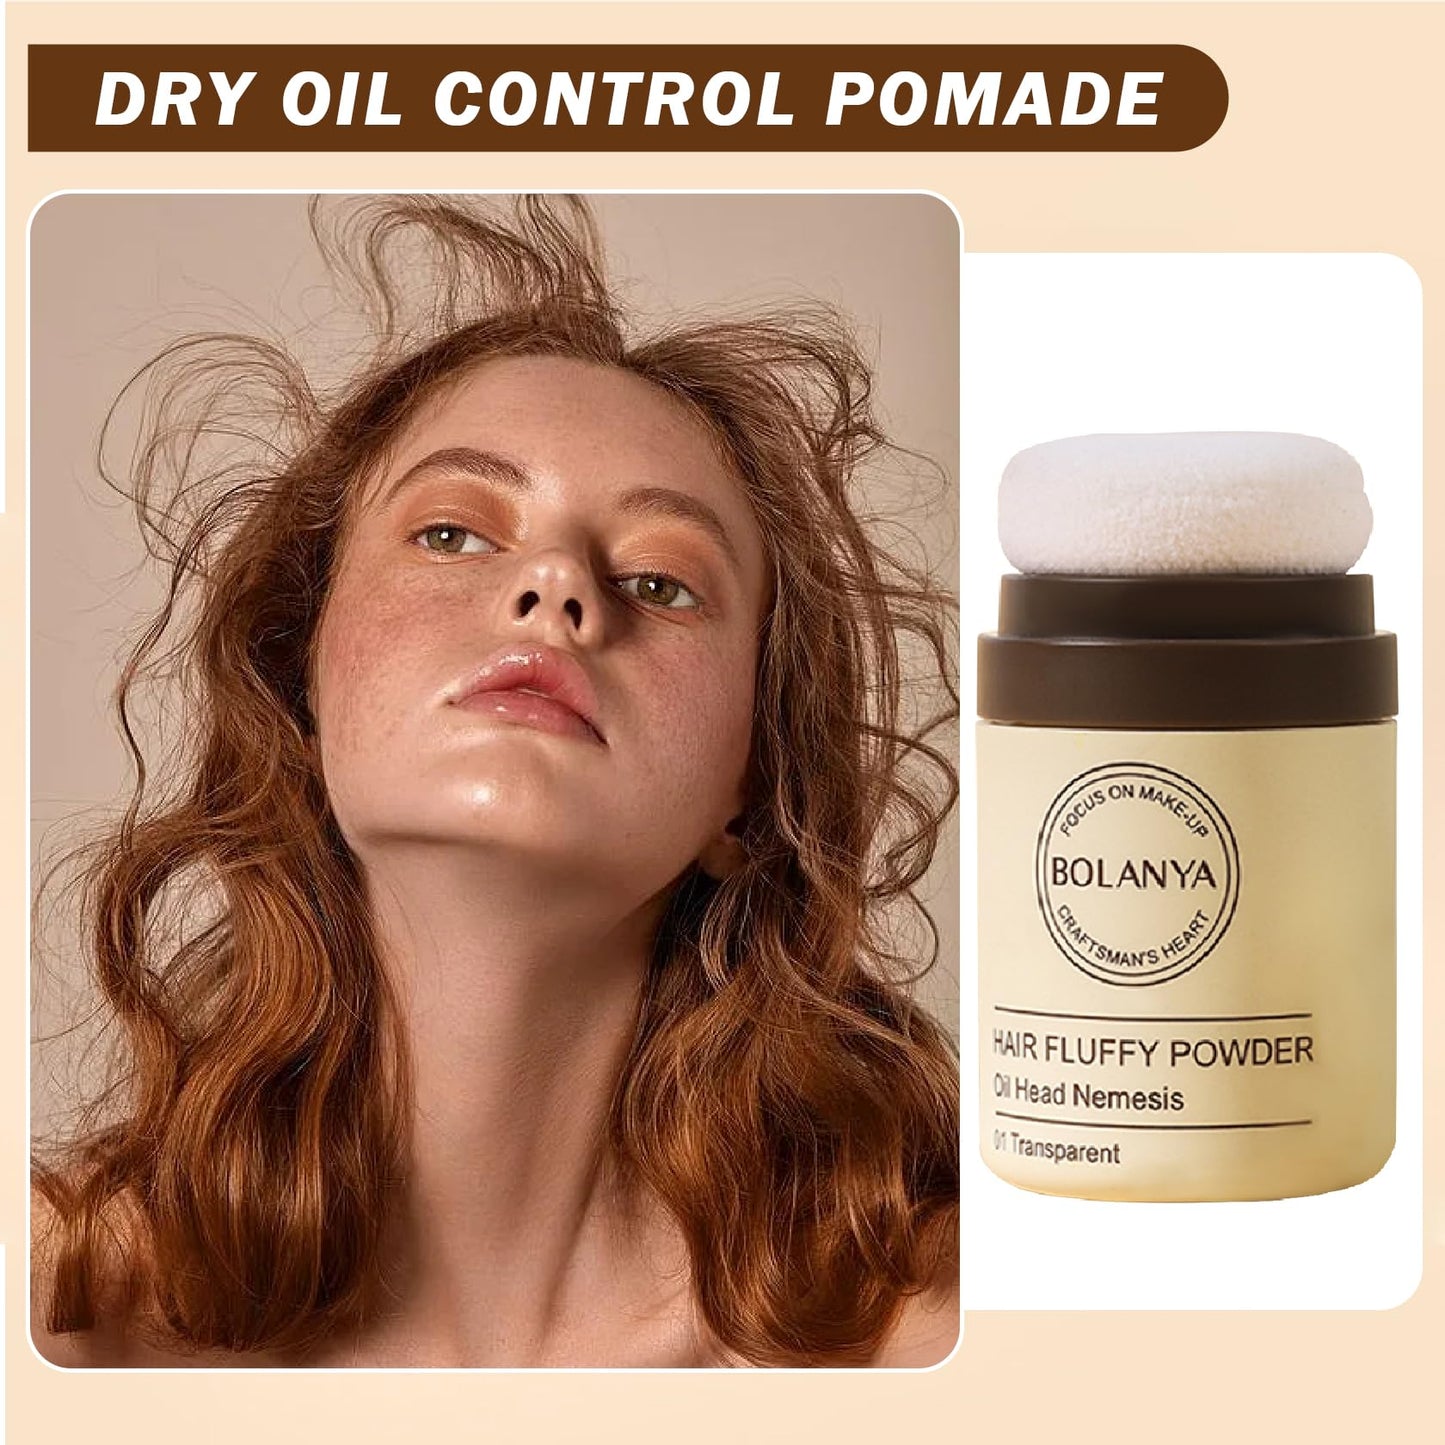 IONSGAKO Dry Shampoo Powder for Women Travel Size Dry Shampoo Powder Dry Shampoo for Dark Hair Oil Control Natural Dry Shampoo Hair Volume Powder